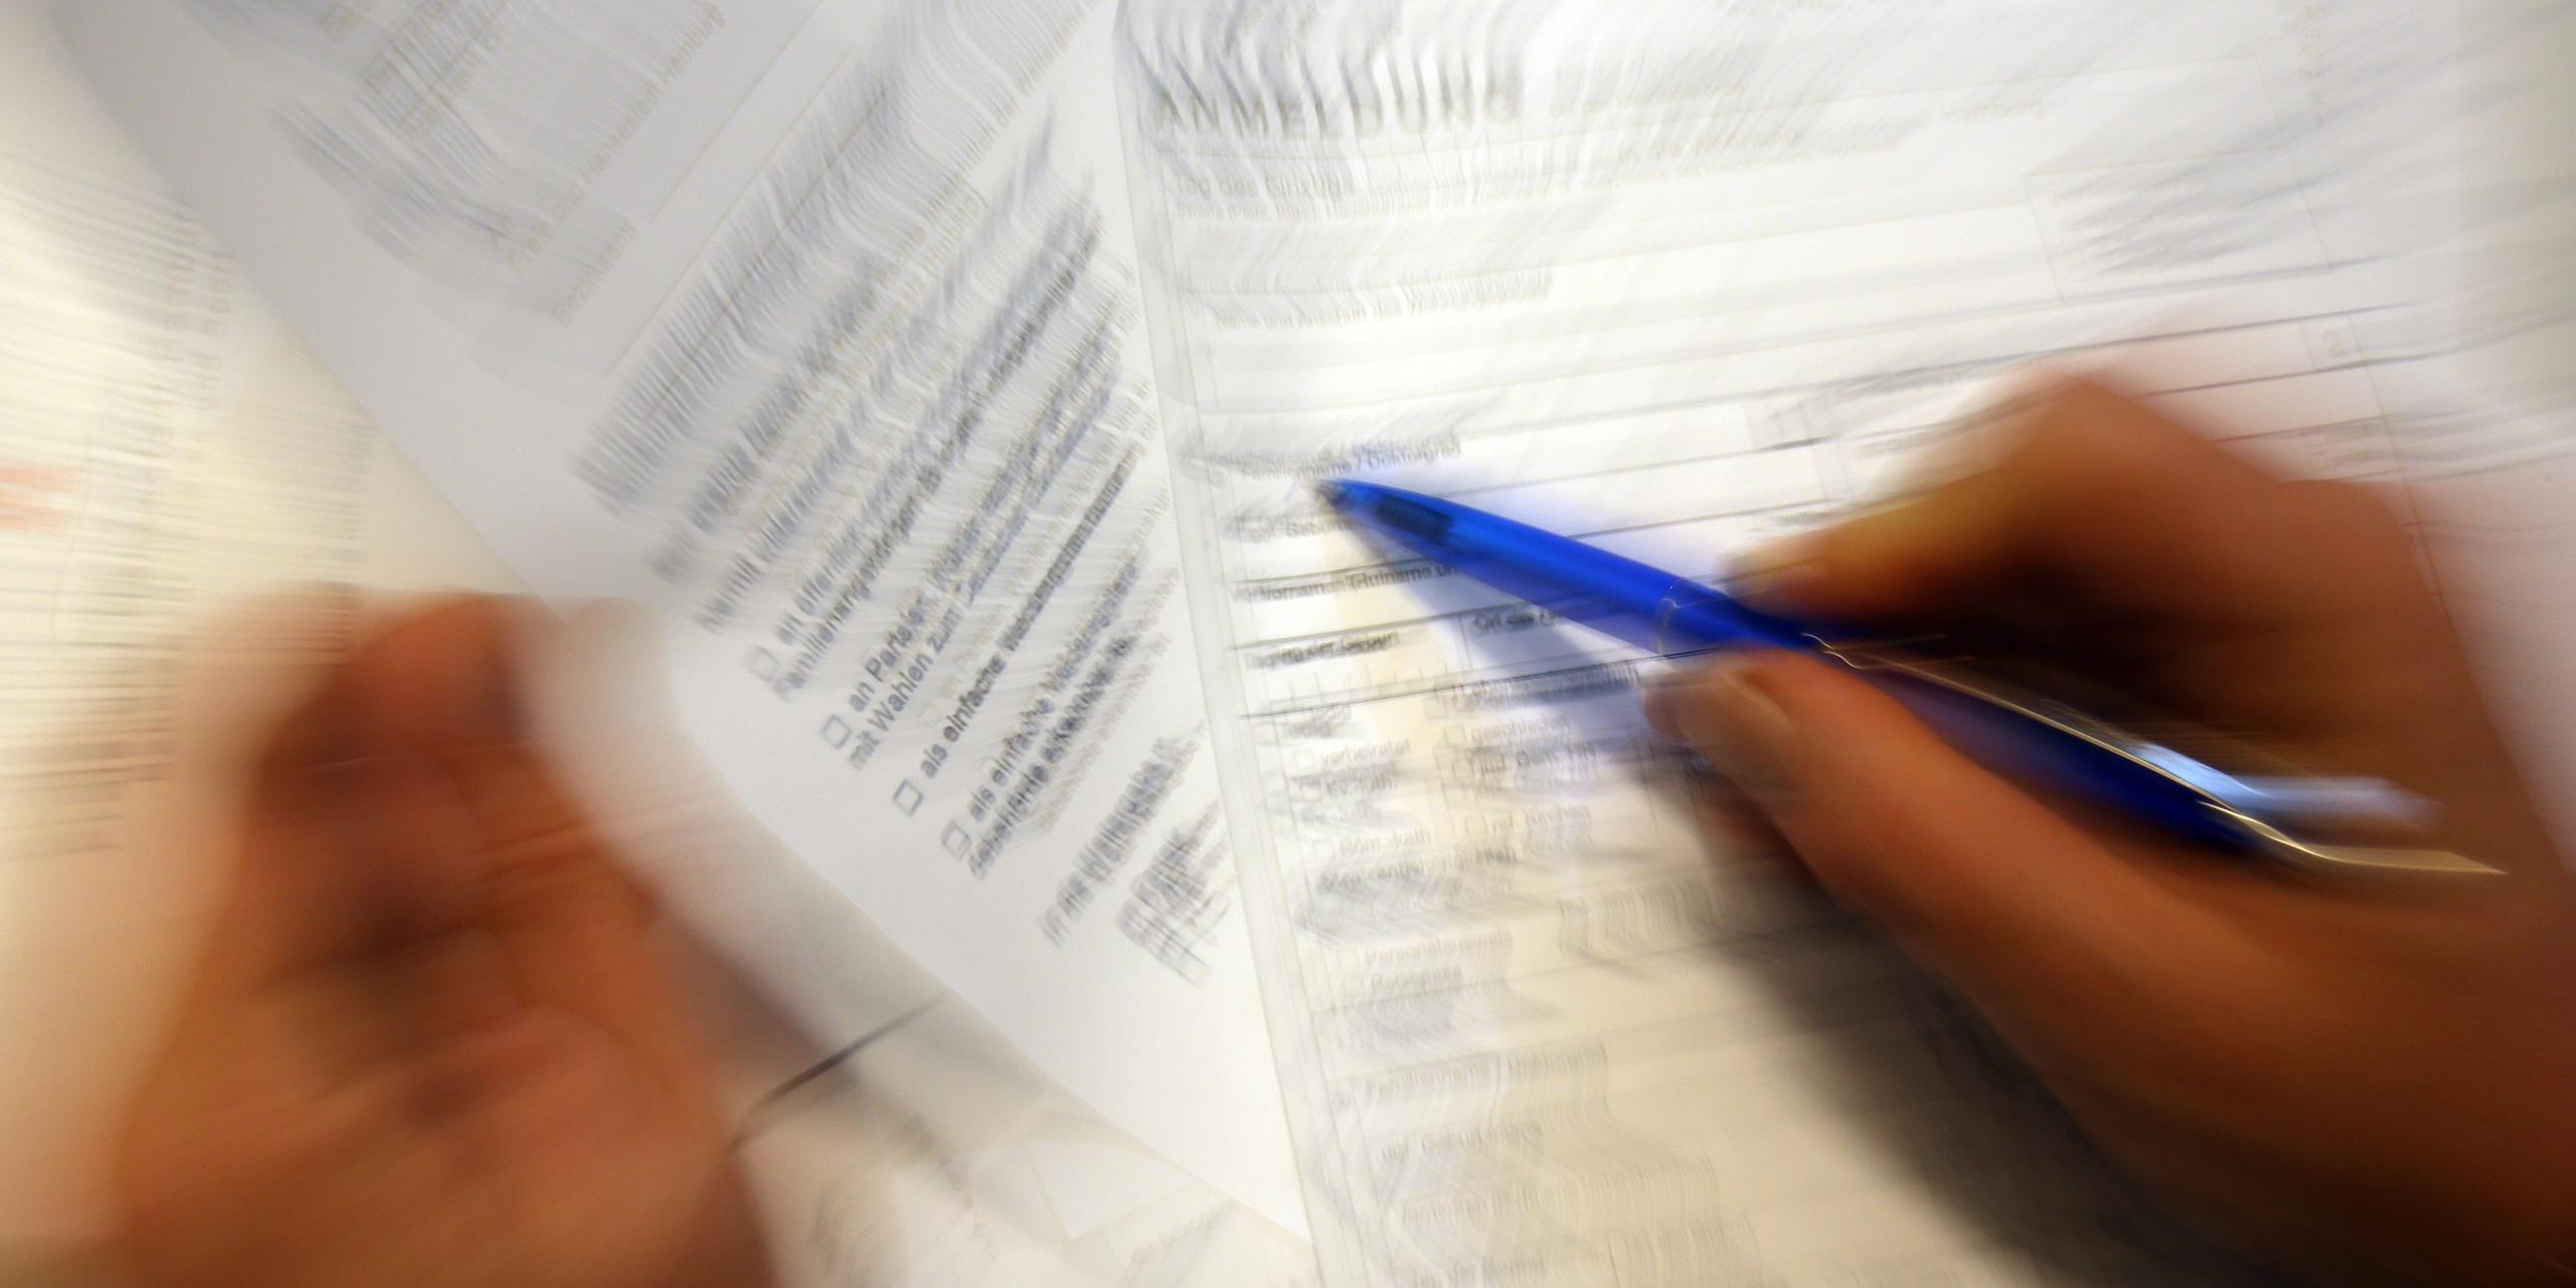 Auf dem Bild sieht man ein verschwommenes Antragsformular. Eine Person setzt den Stift an, um das Blatt auszufüllen.